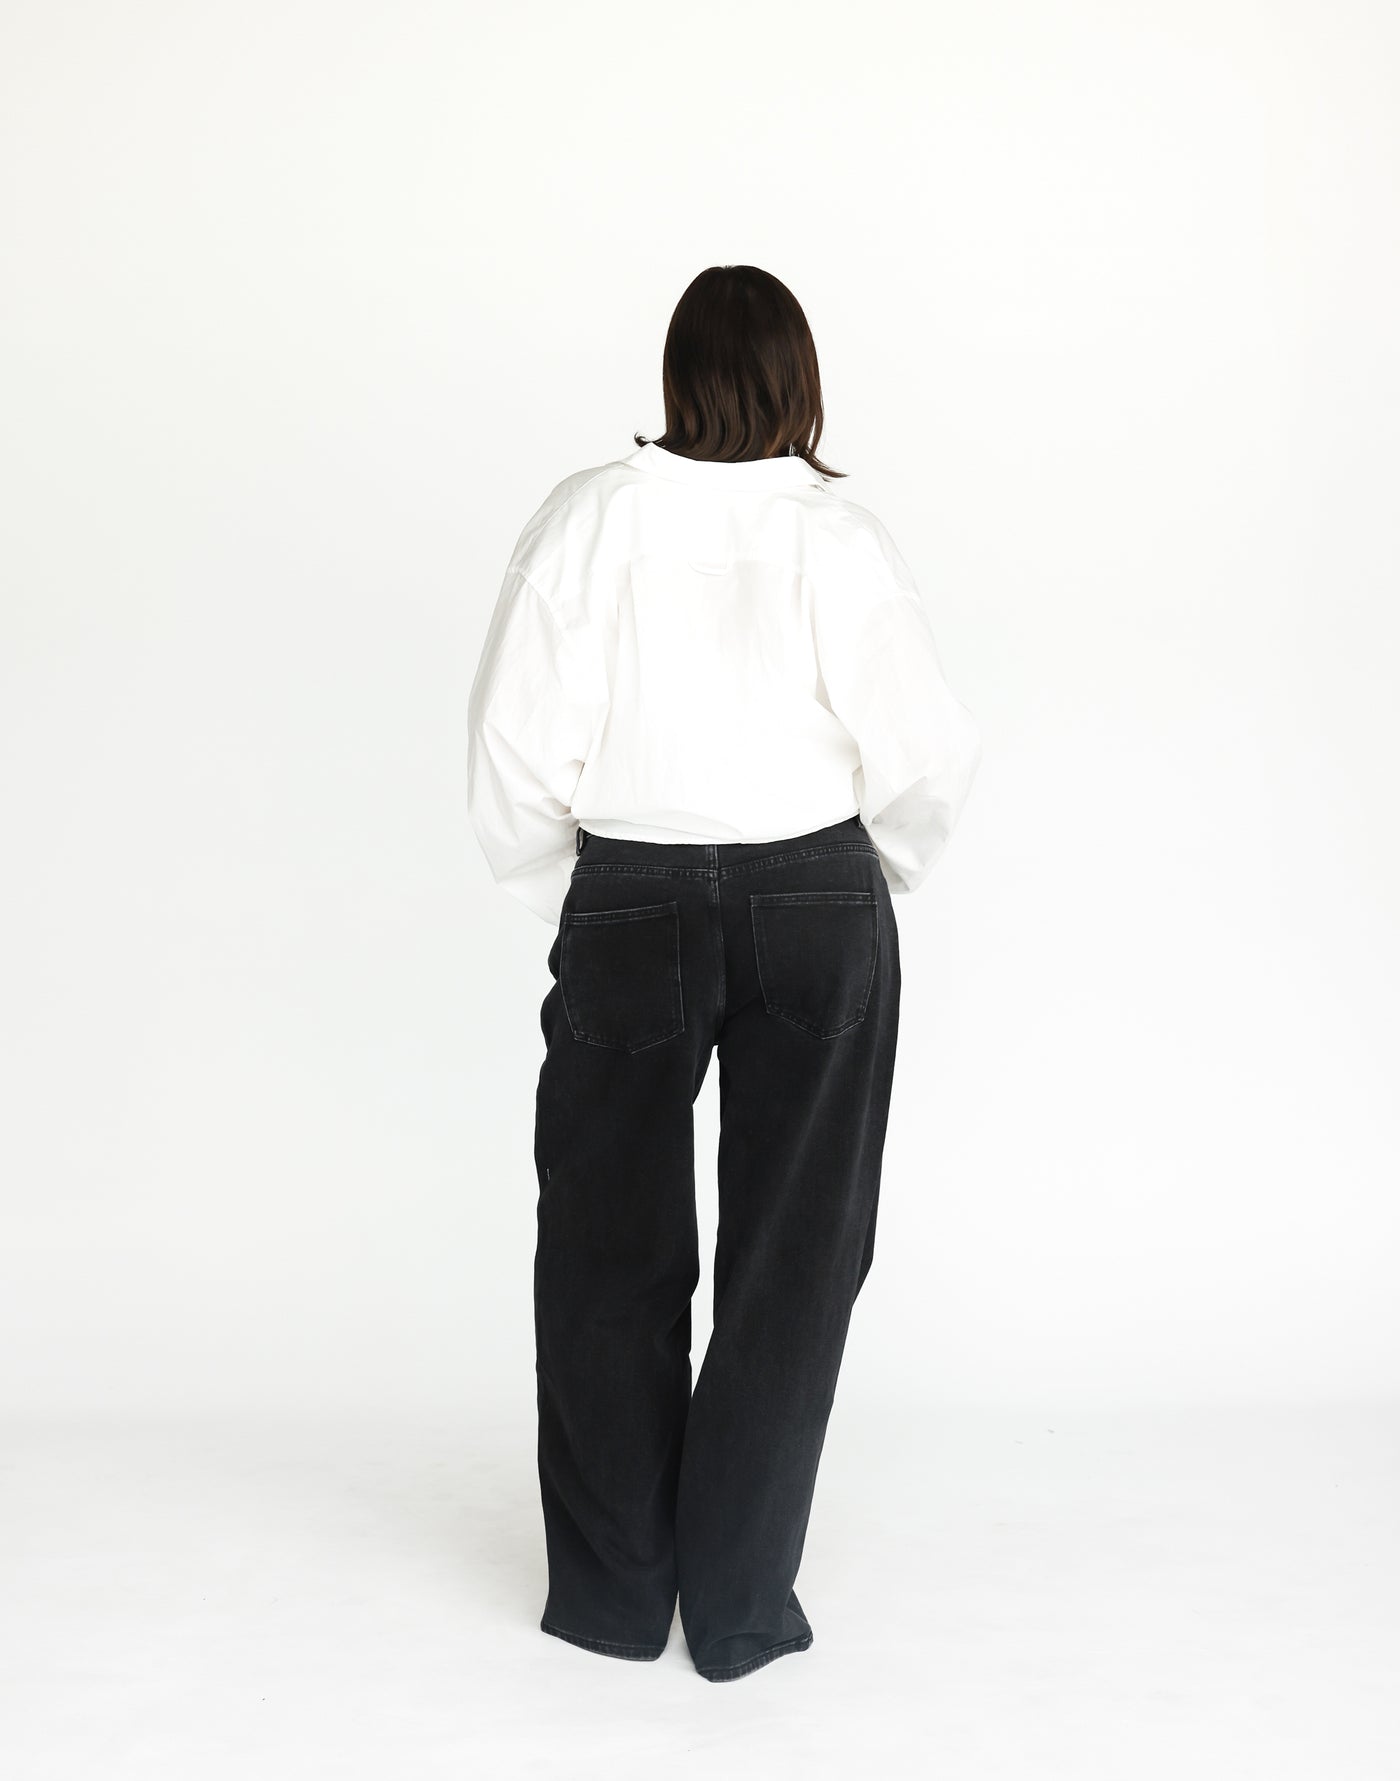 Roman Jeans (Vintage Black) | CHARCOAL Exclusive - Low Rise Wide Leg Jeans - Women's Pants - Charcoal Clothing